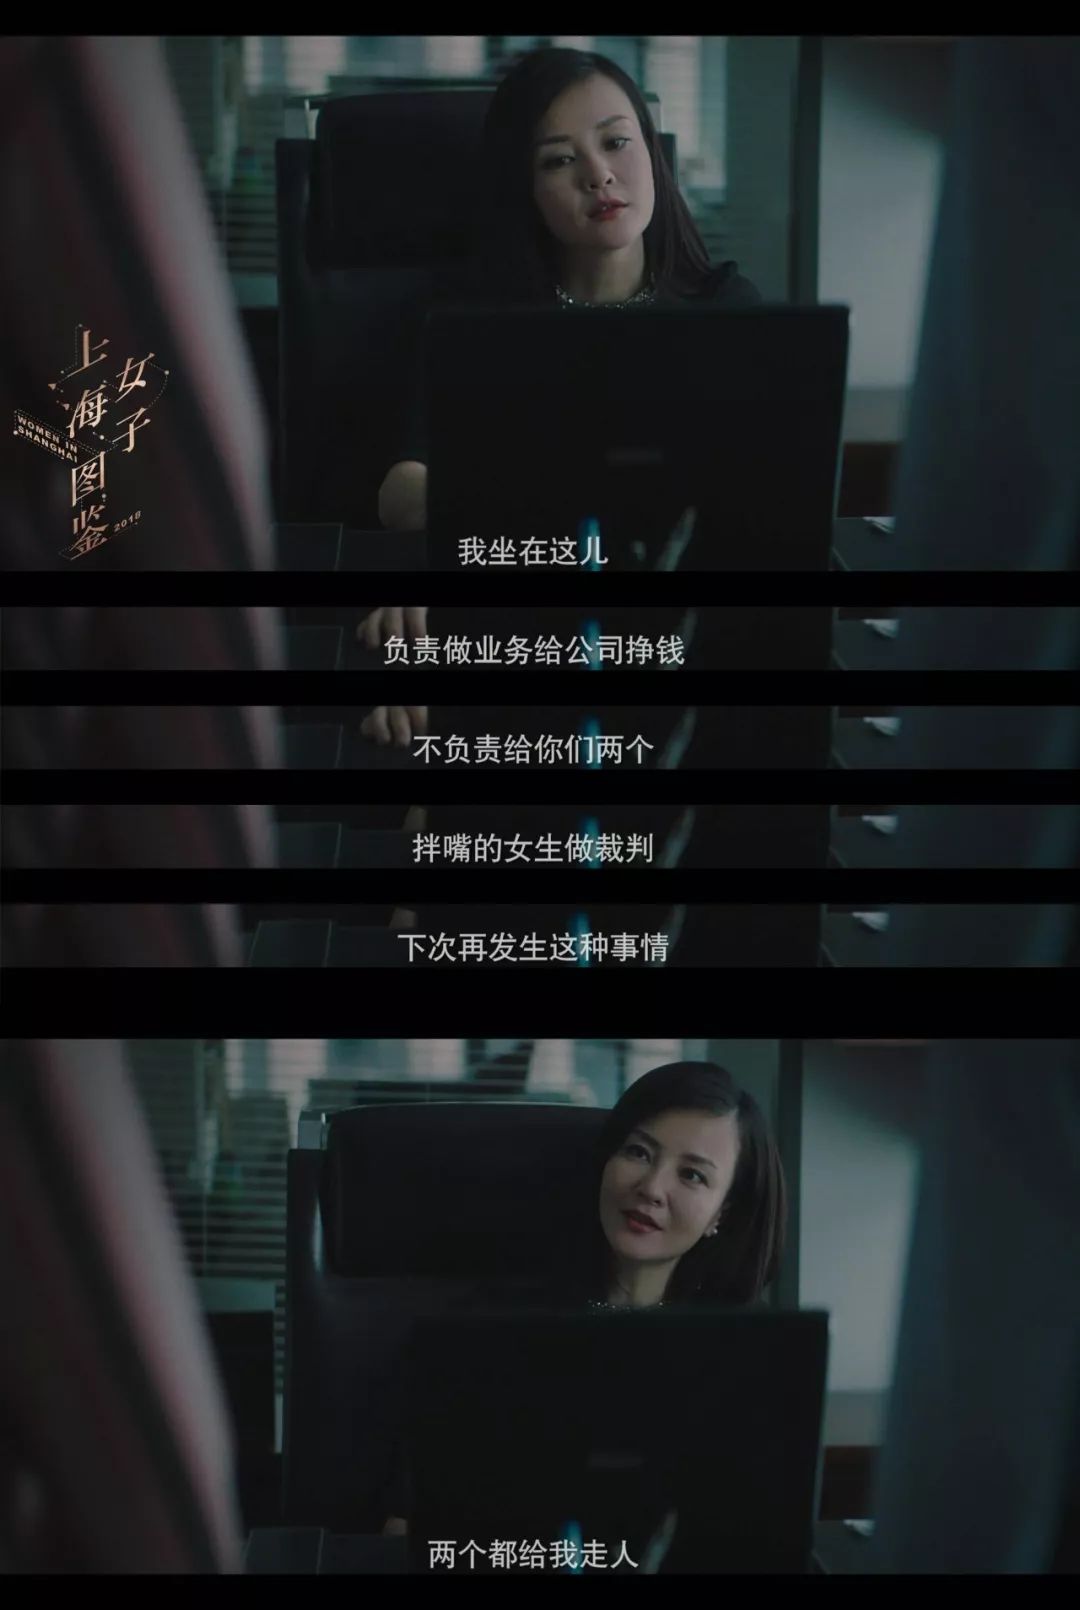 上海女子图鉴经典旁白图片